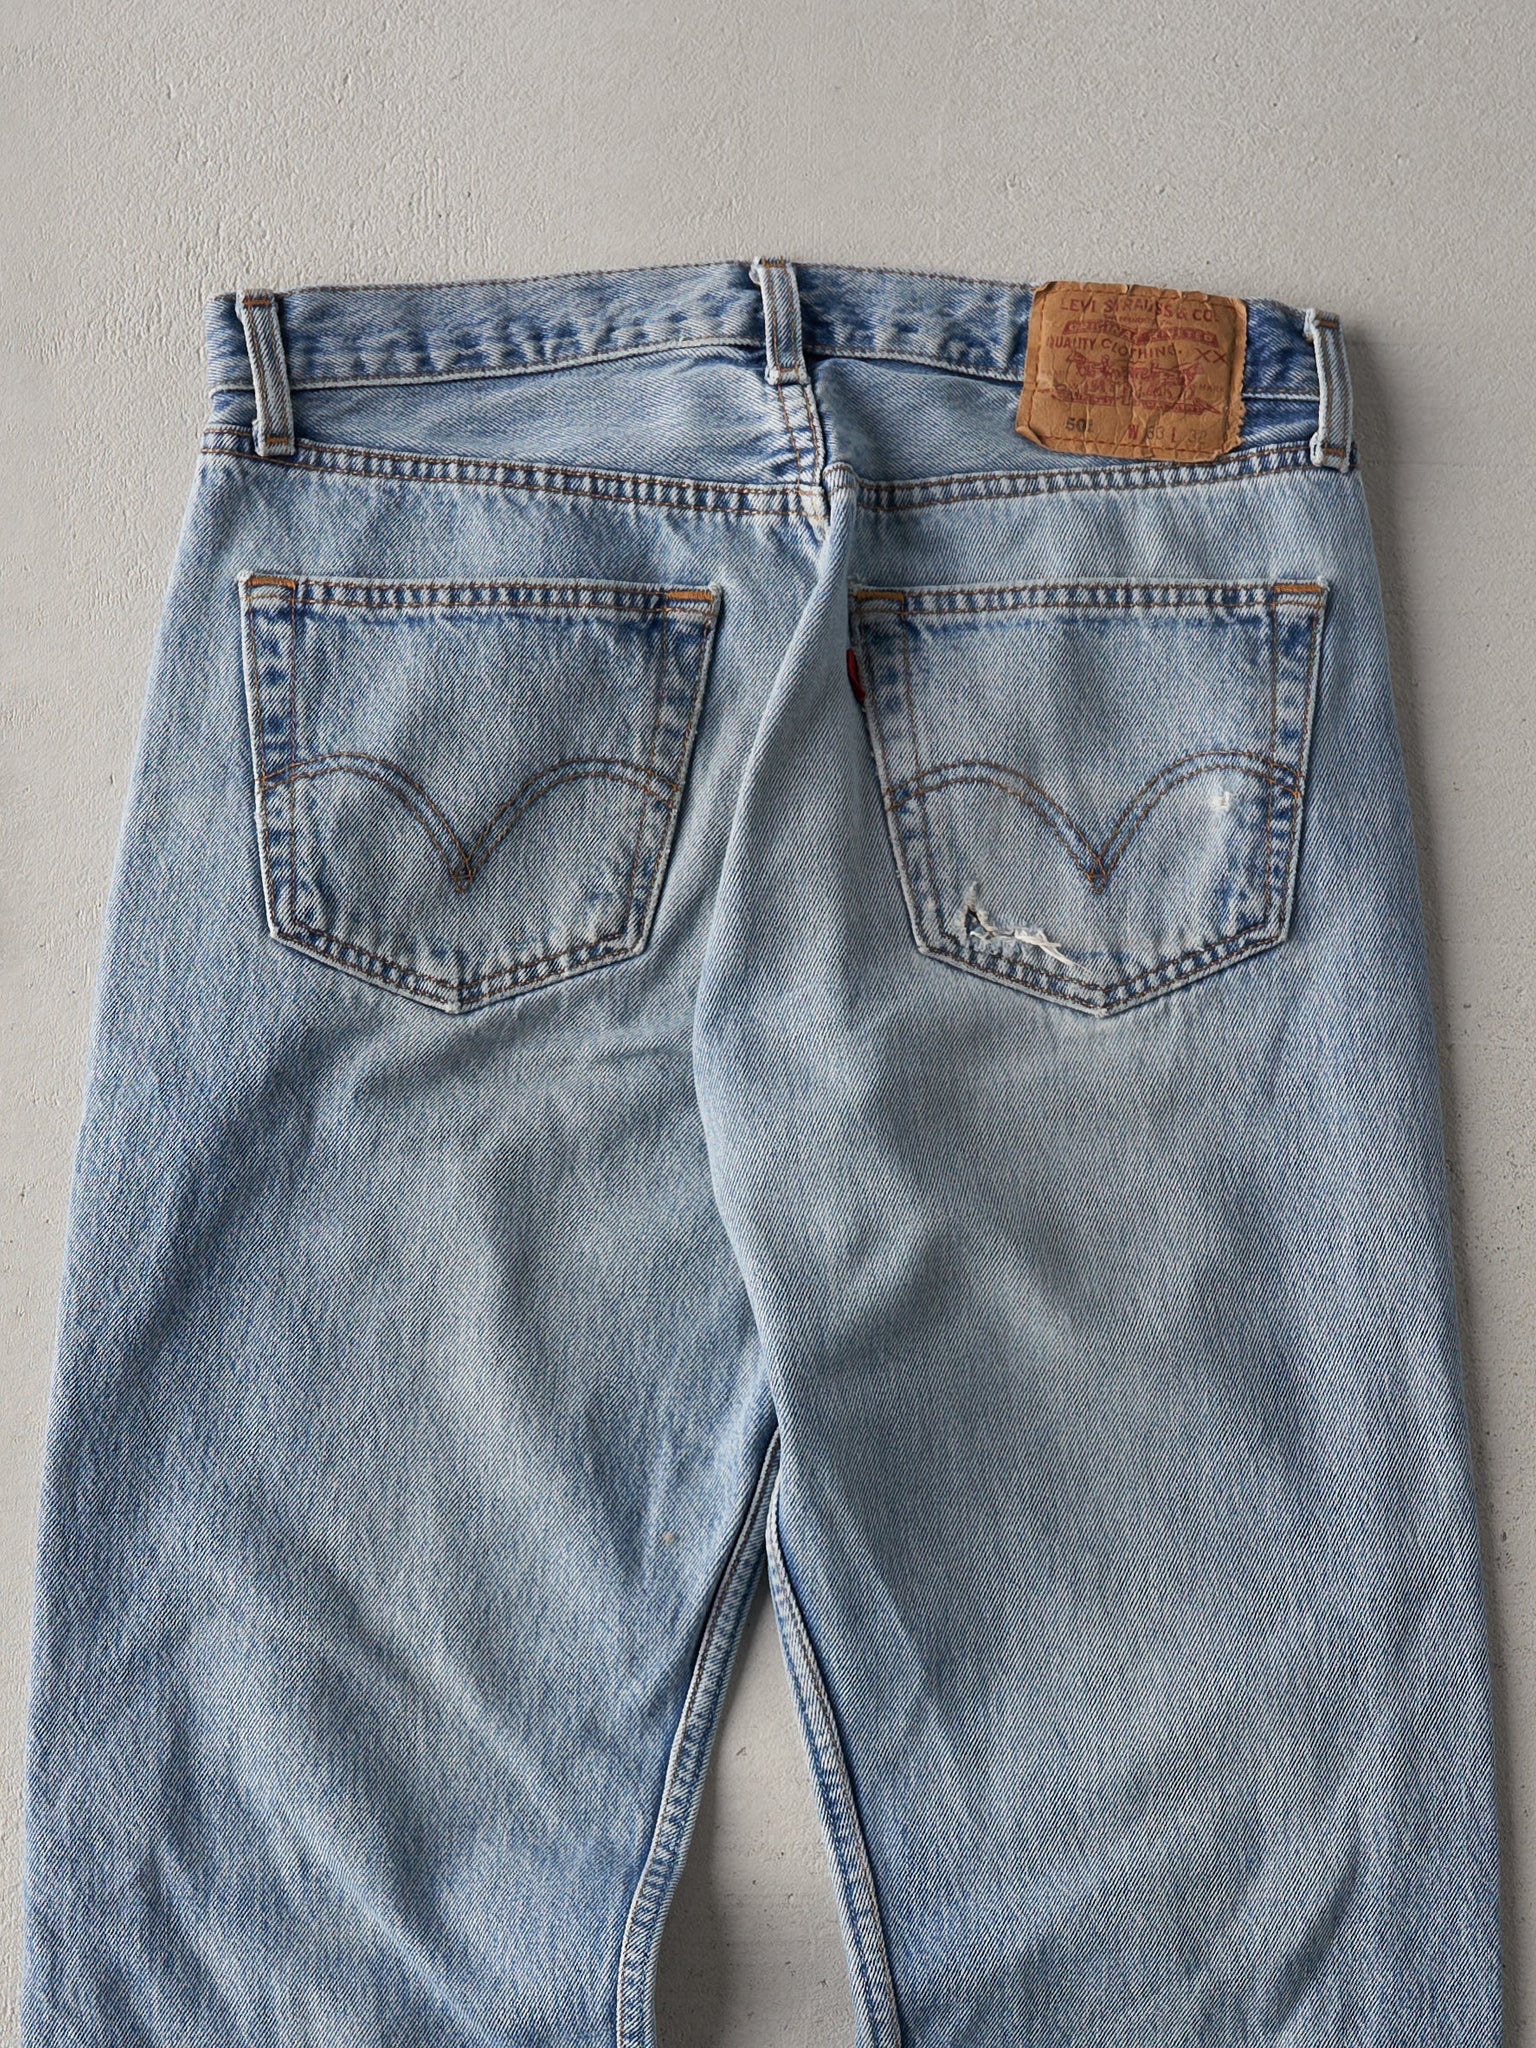 Vintage 80s Light Wash Levi's 501 Jeans (32x30.5)